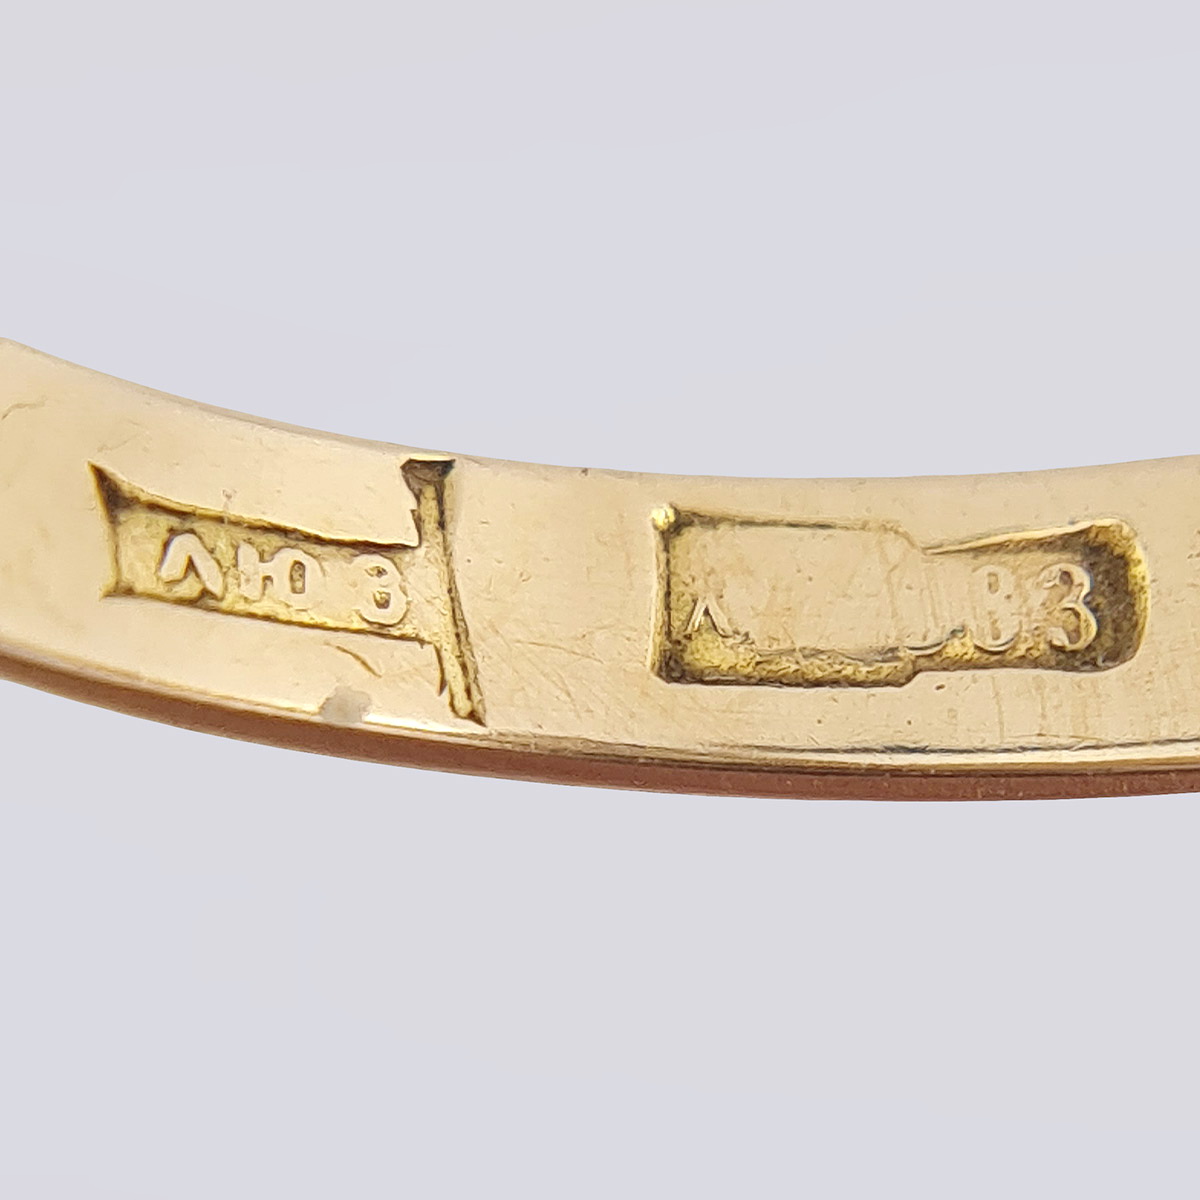 Золотое кольцо СССР с якутским бриллиантом в оправе тюльпан (583 проба, 18 размер)